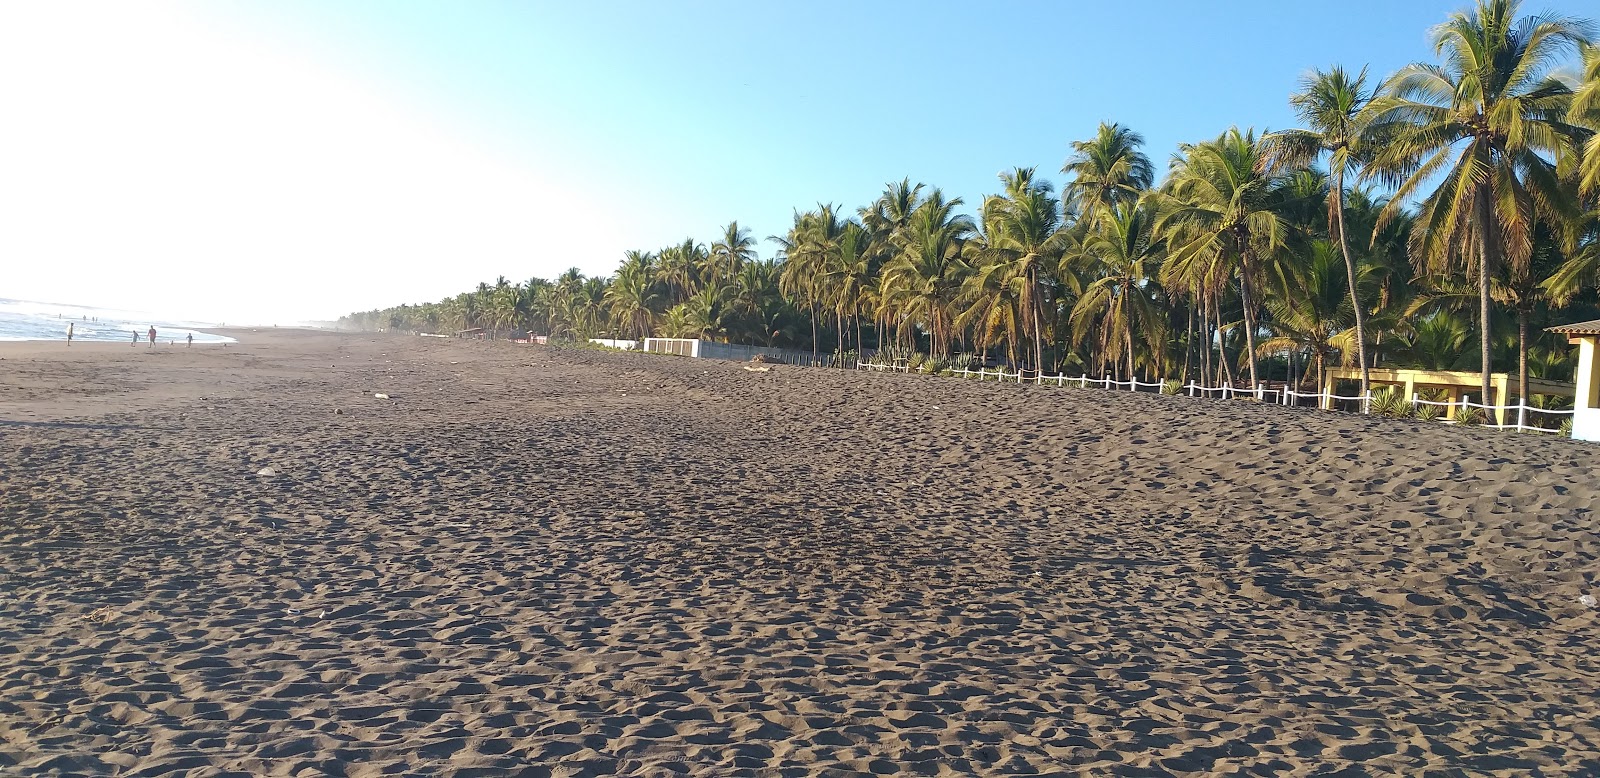 Φωτογραφία του Zunza beach με επίπεδο καθαριότητας εν μέρει καθαρό